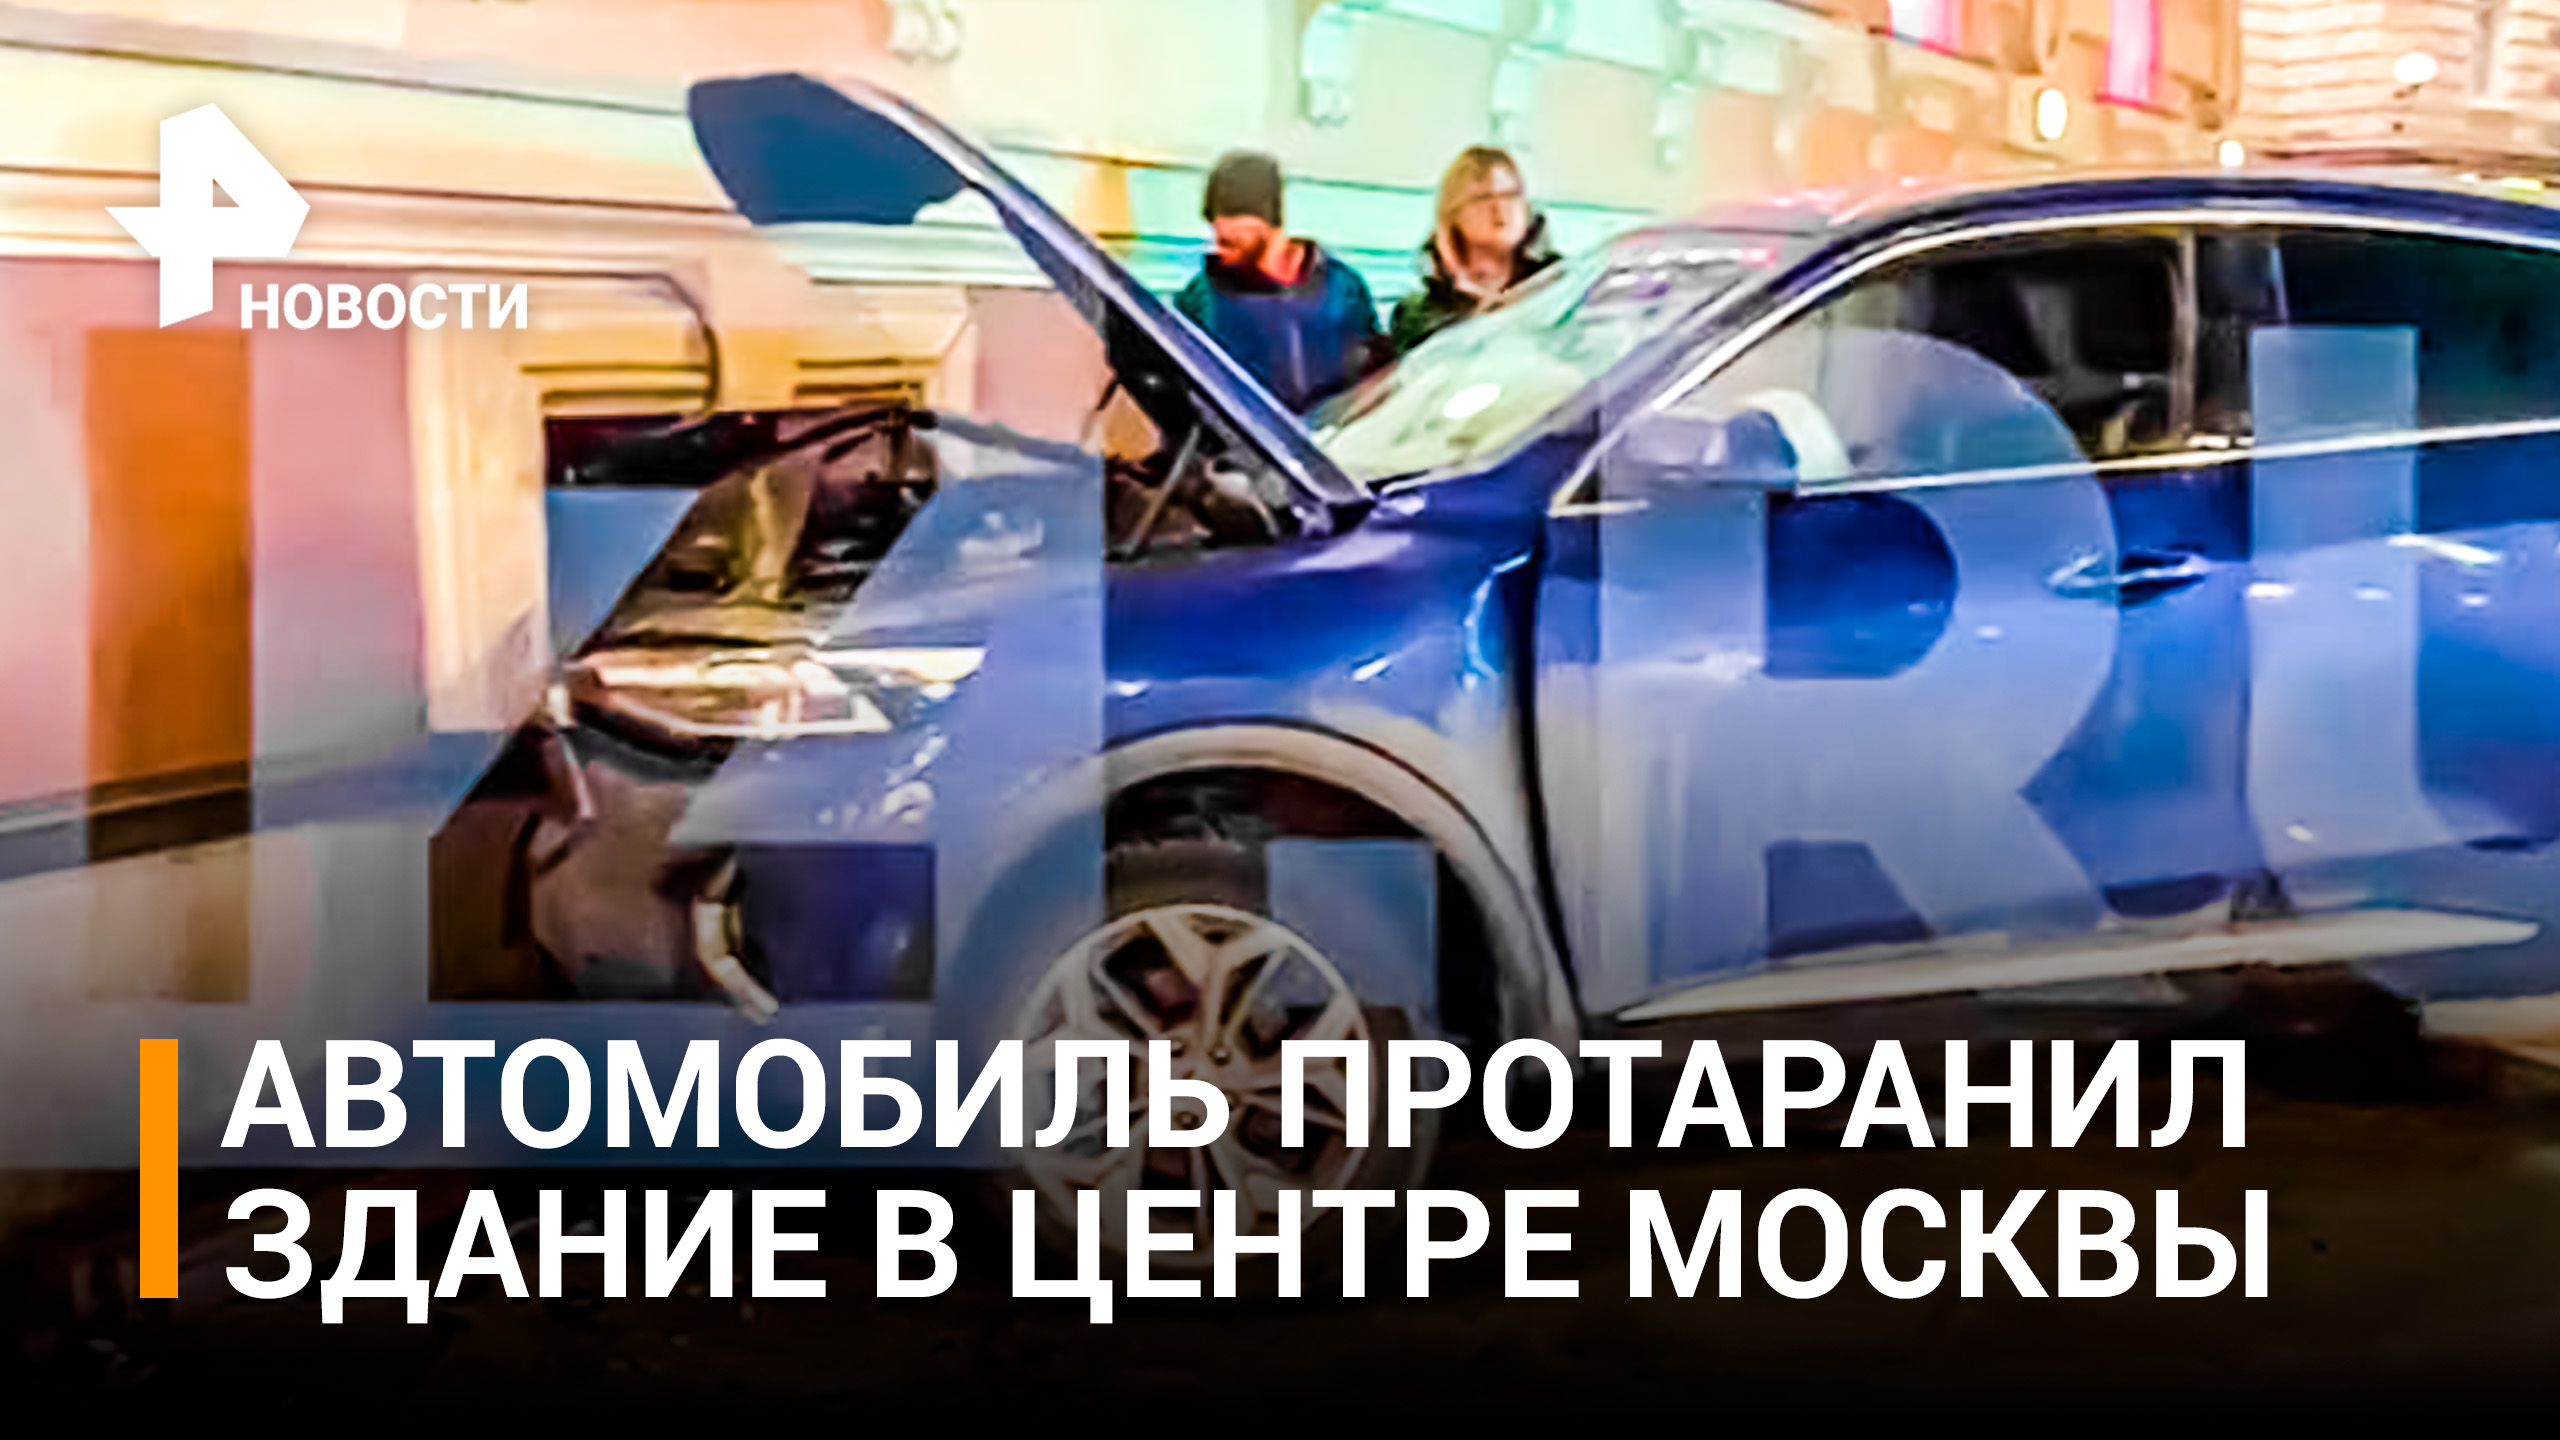 Автомобиль въехал в здание центре Москвы / РЕН Новости